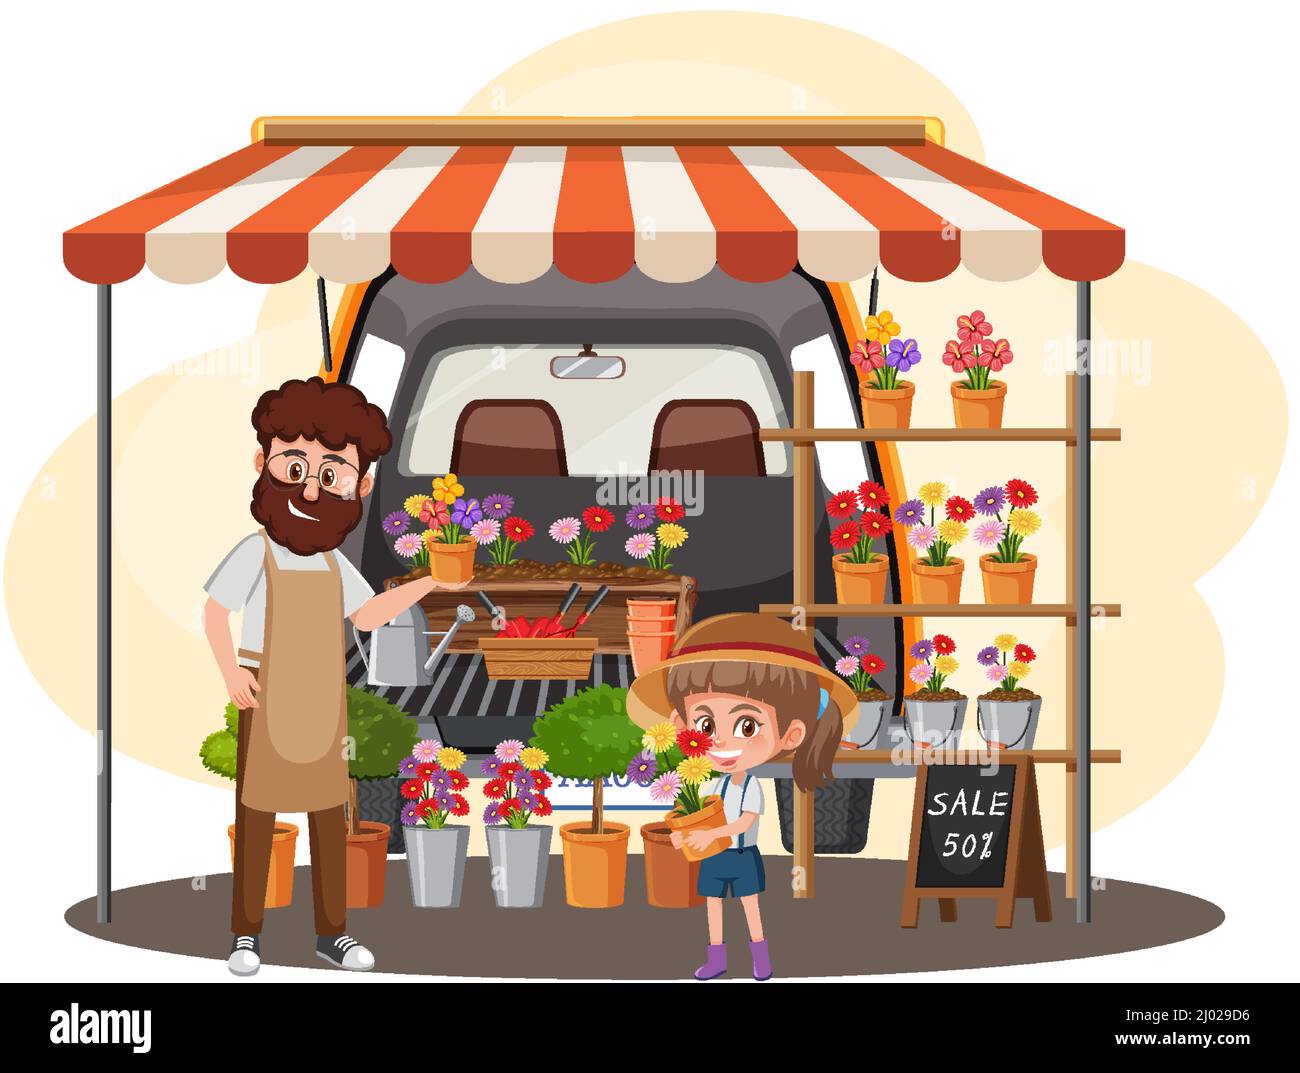 Concept de marché aux puces avec illustration de la boutique de jardin Illustration de Vecteur